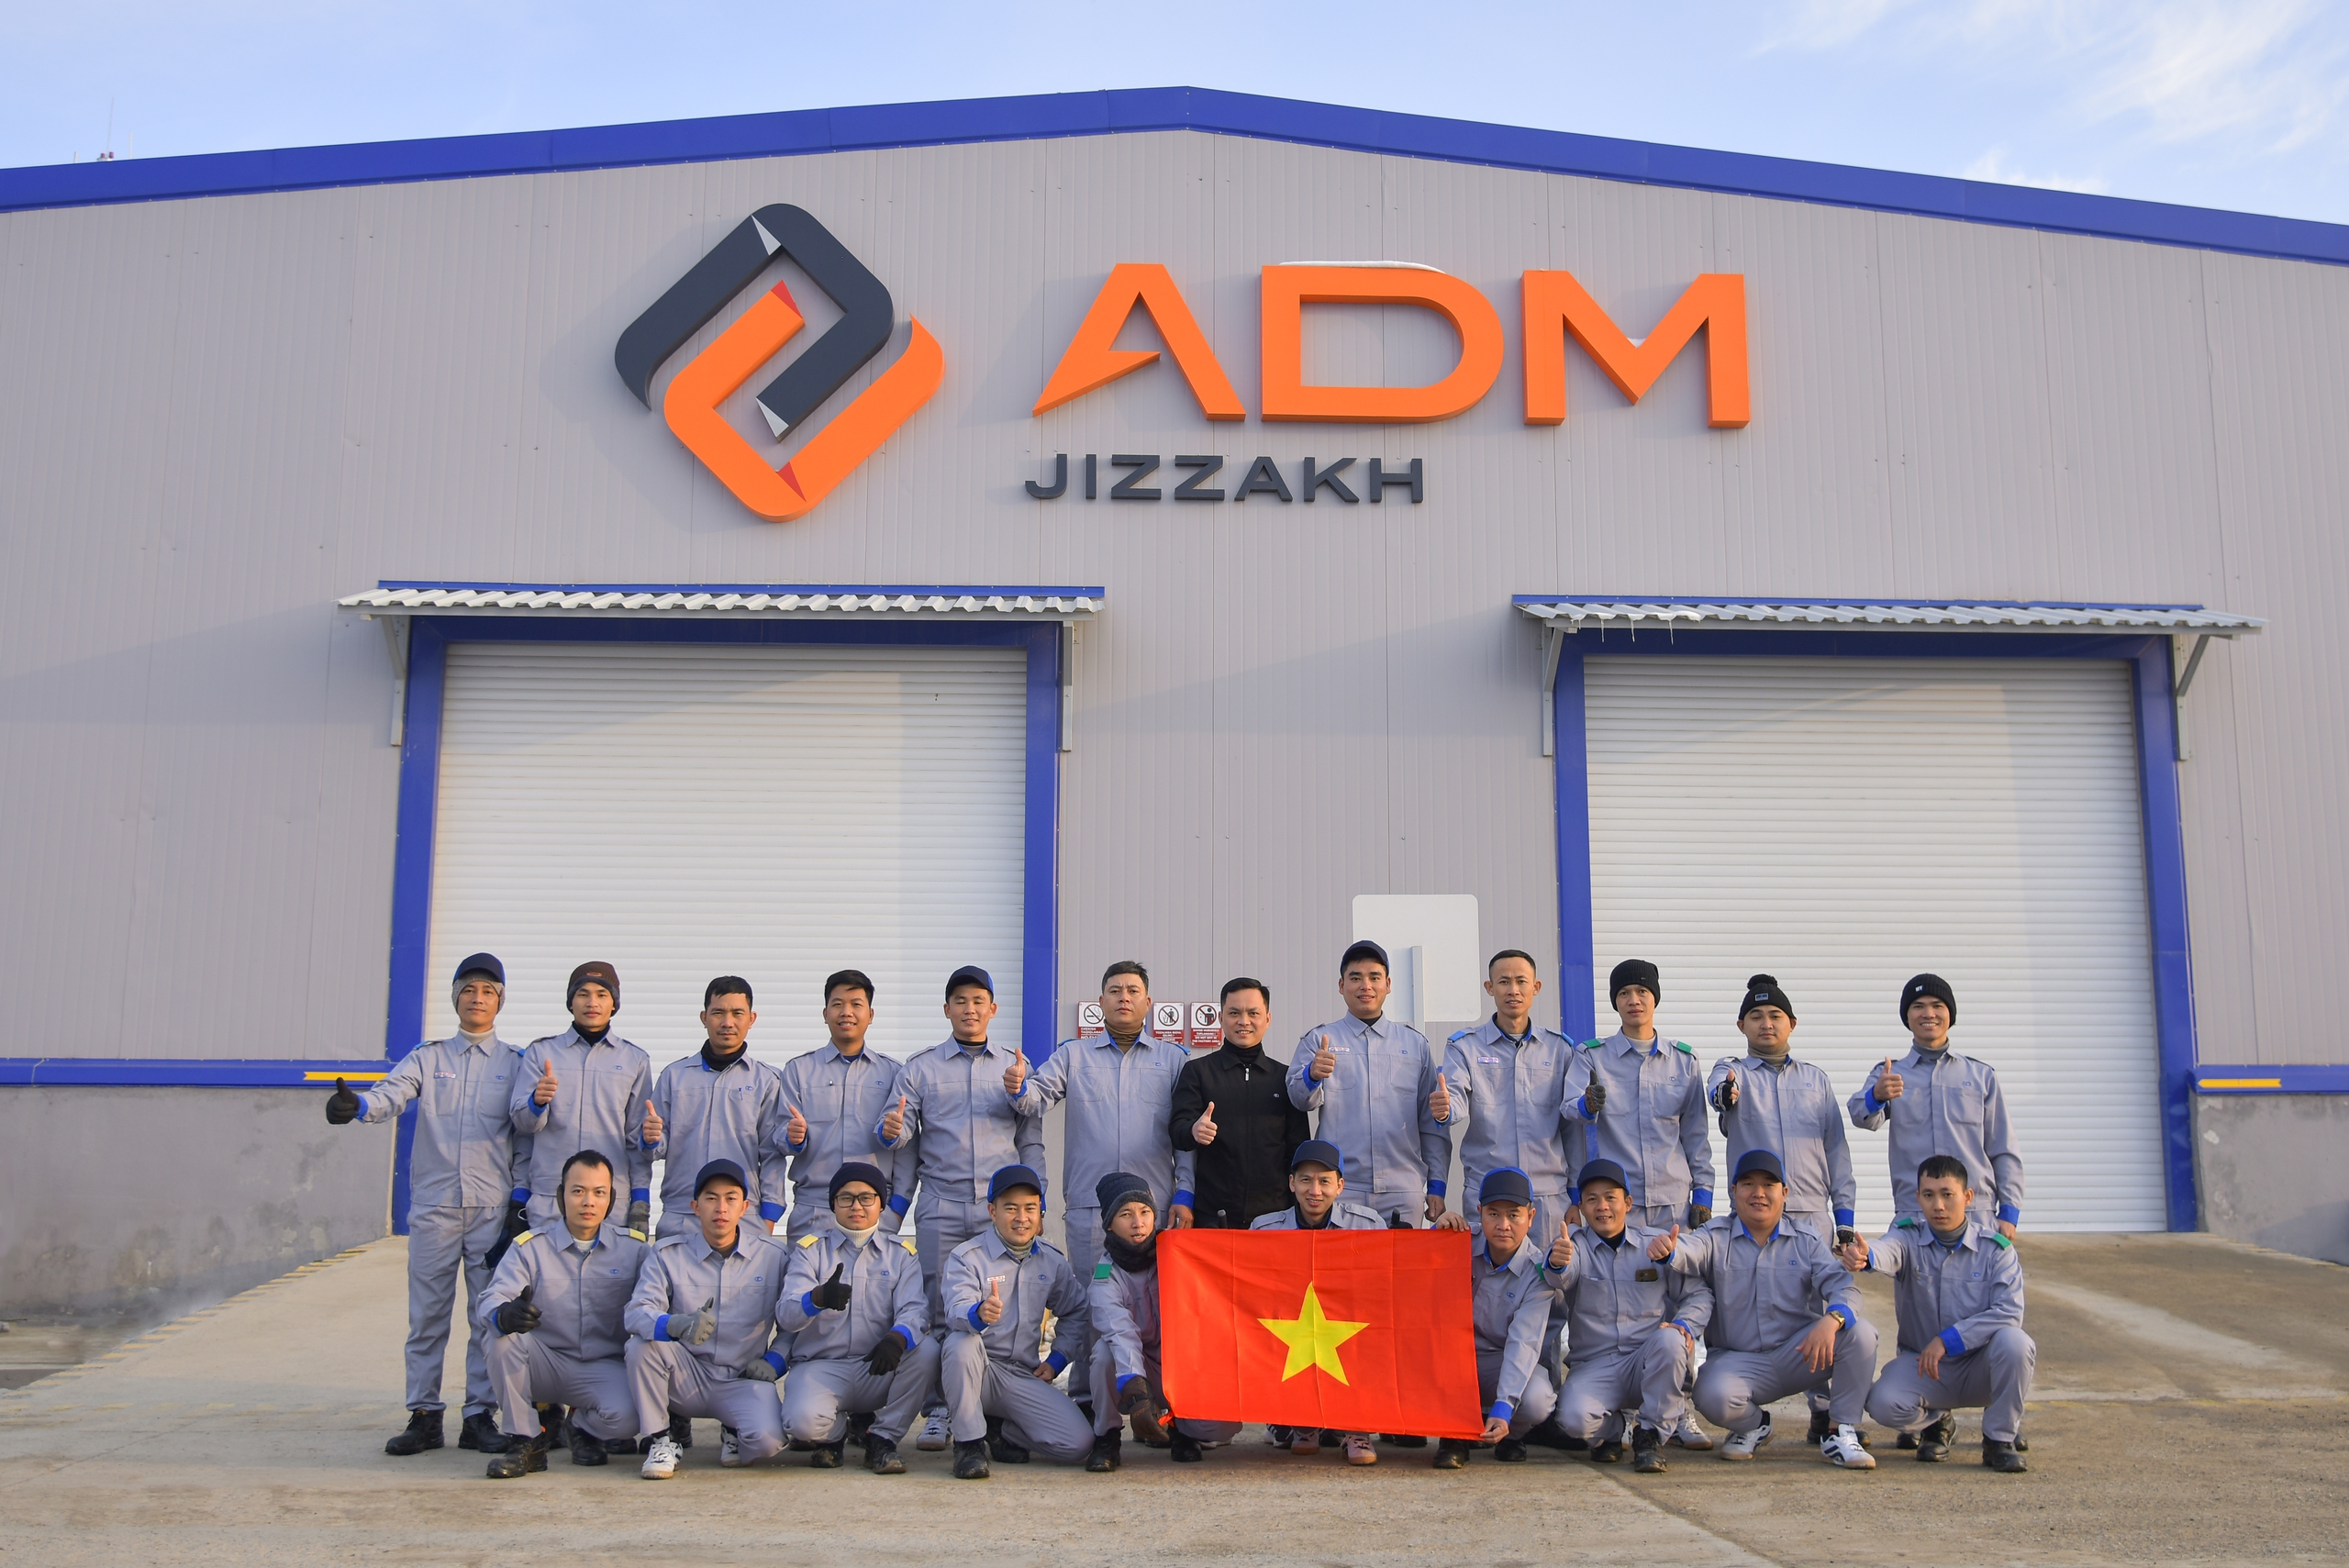 Nhà máy THACO KIA tham gia giám sát sản xuất xe Kia Sonet tại Uzbekistan cùng Công ty ADM- Ảnh 7.